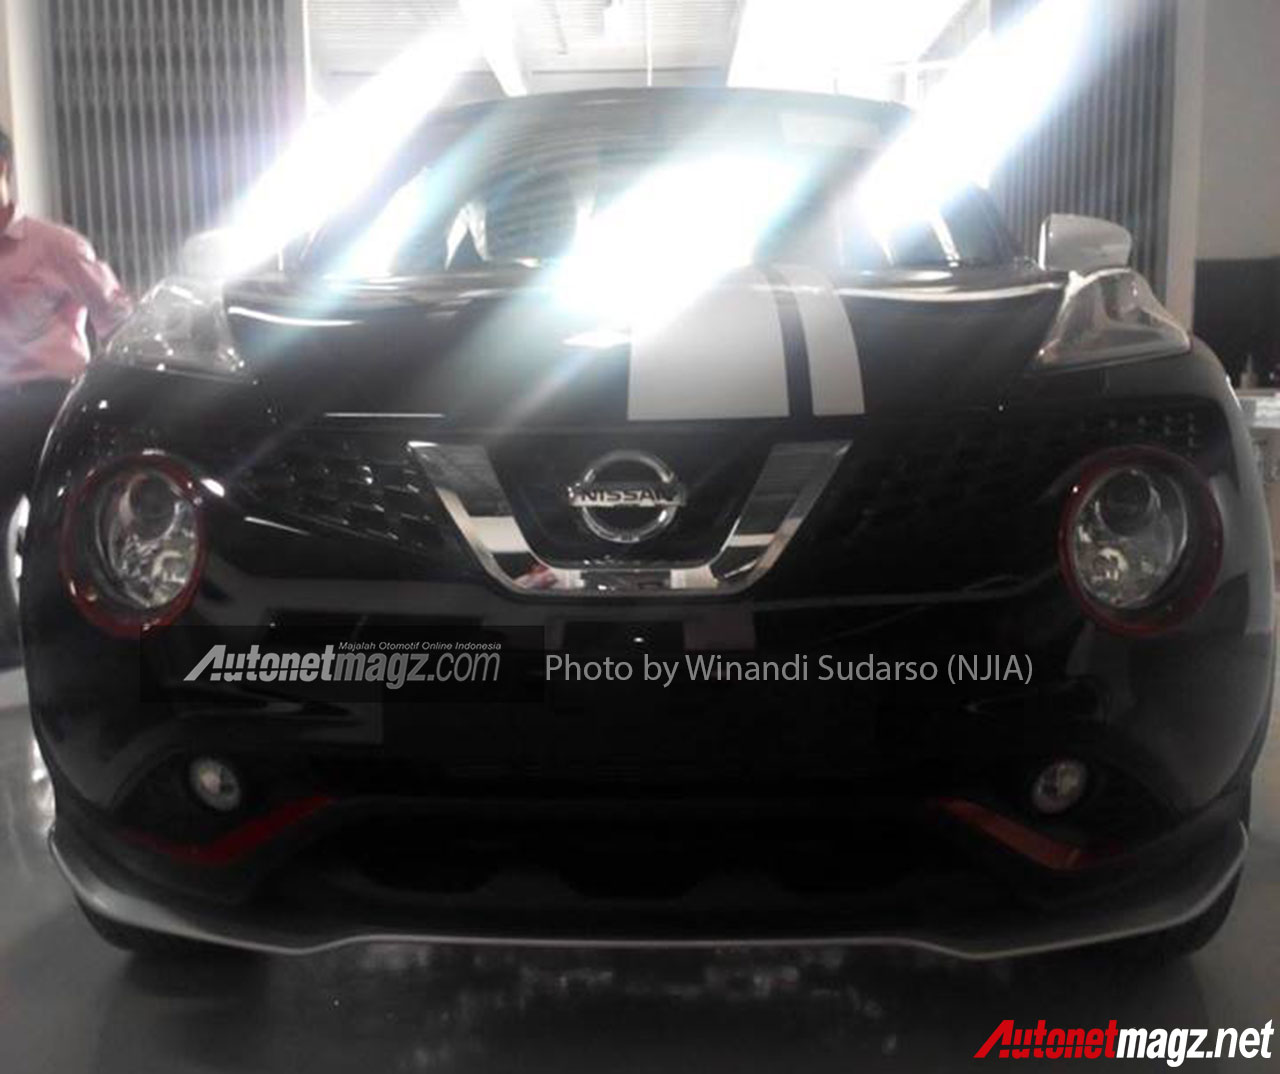 Honda, Nissan-Juke-Facelift-Spyshot: Ini Prediksi Mobil Baru Indonesia di Awal Tahun 2015